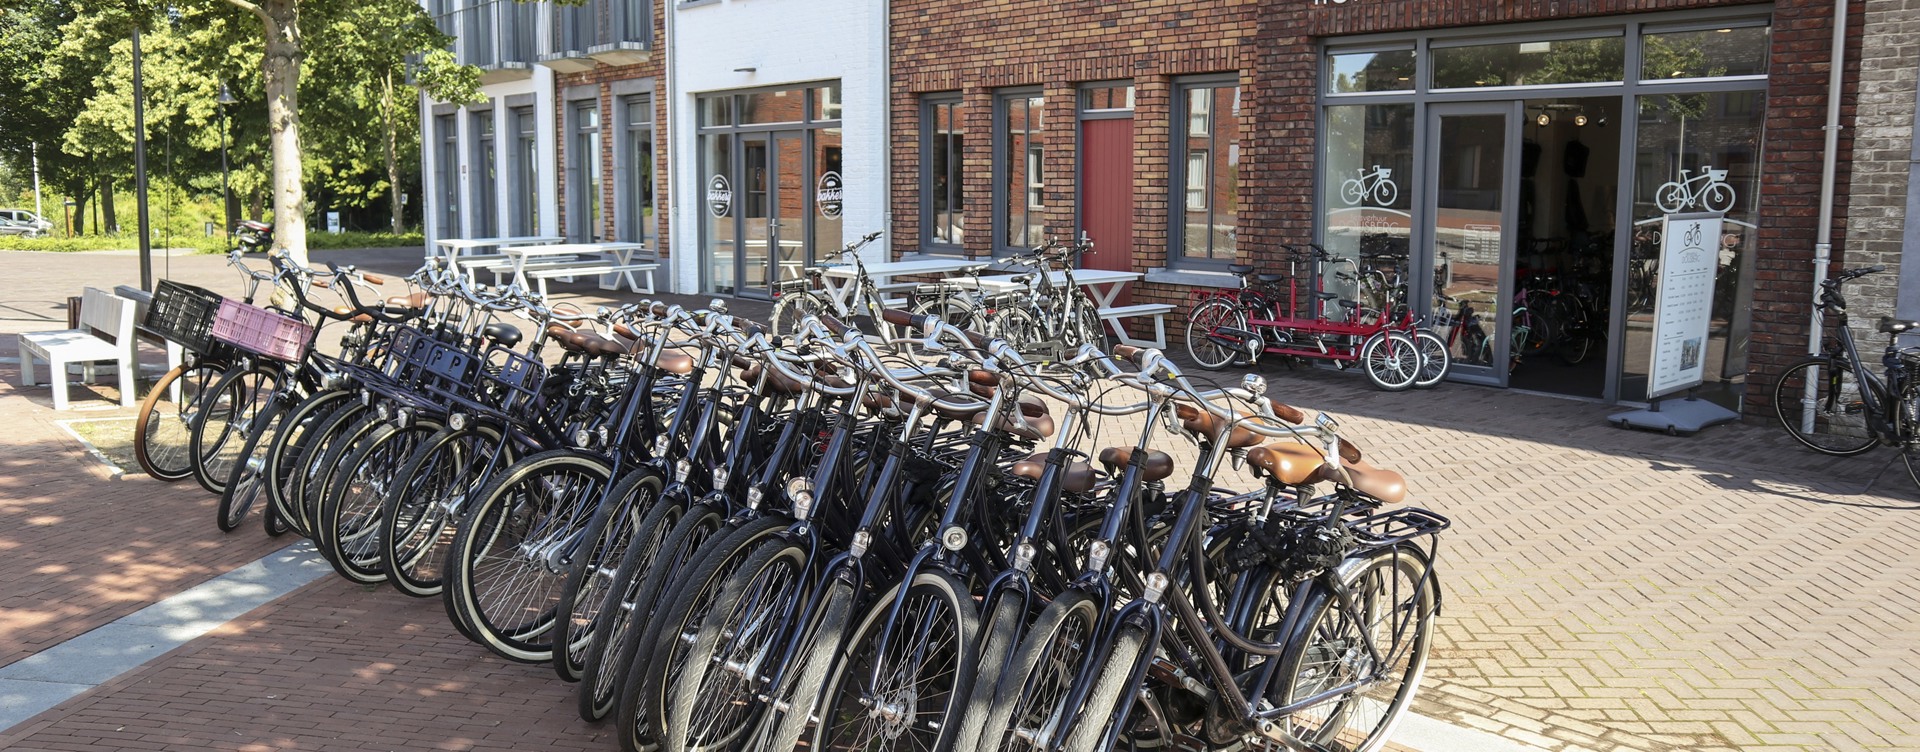 Alquila la bicicleta que mejor se adapte a tus deseos en
Fietsverhuur Dousberg, situado en el resort